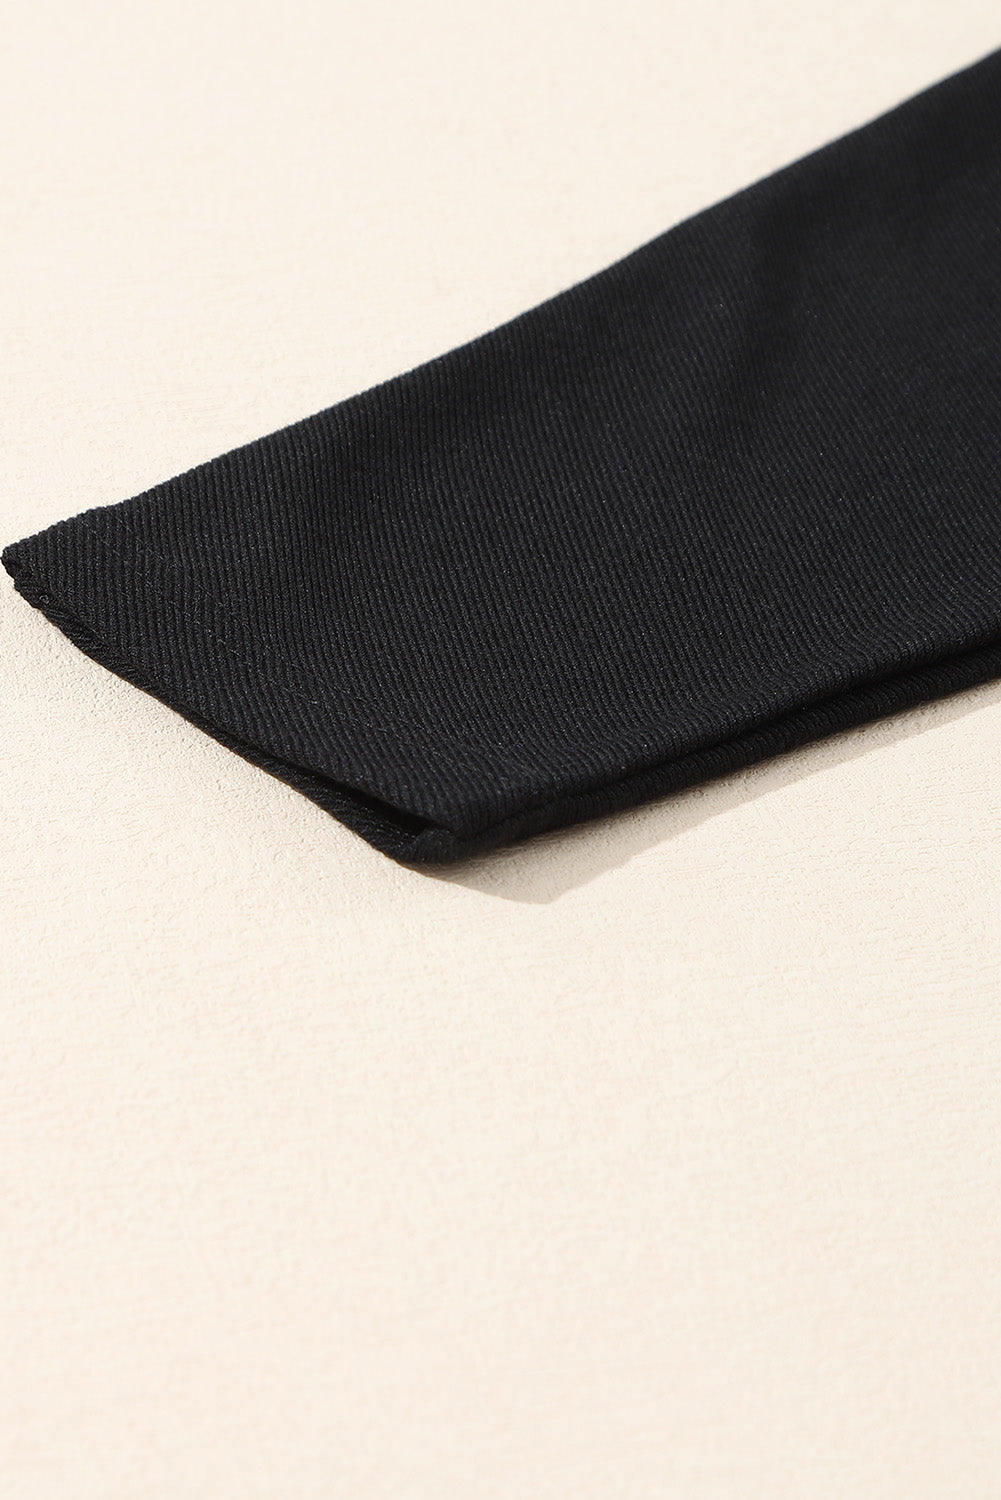 Schwarzes, geripptes Oberteil mit aufgesetzter Tasche und geteiltem Ausschnitt